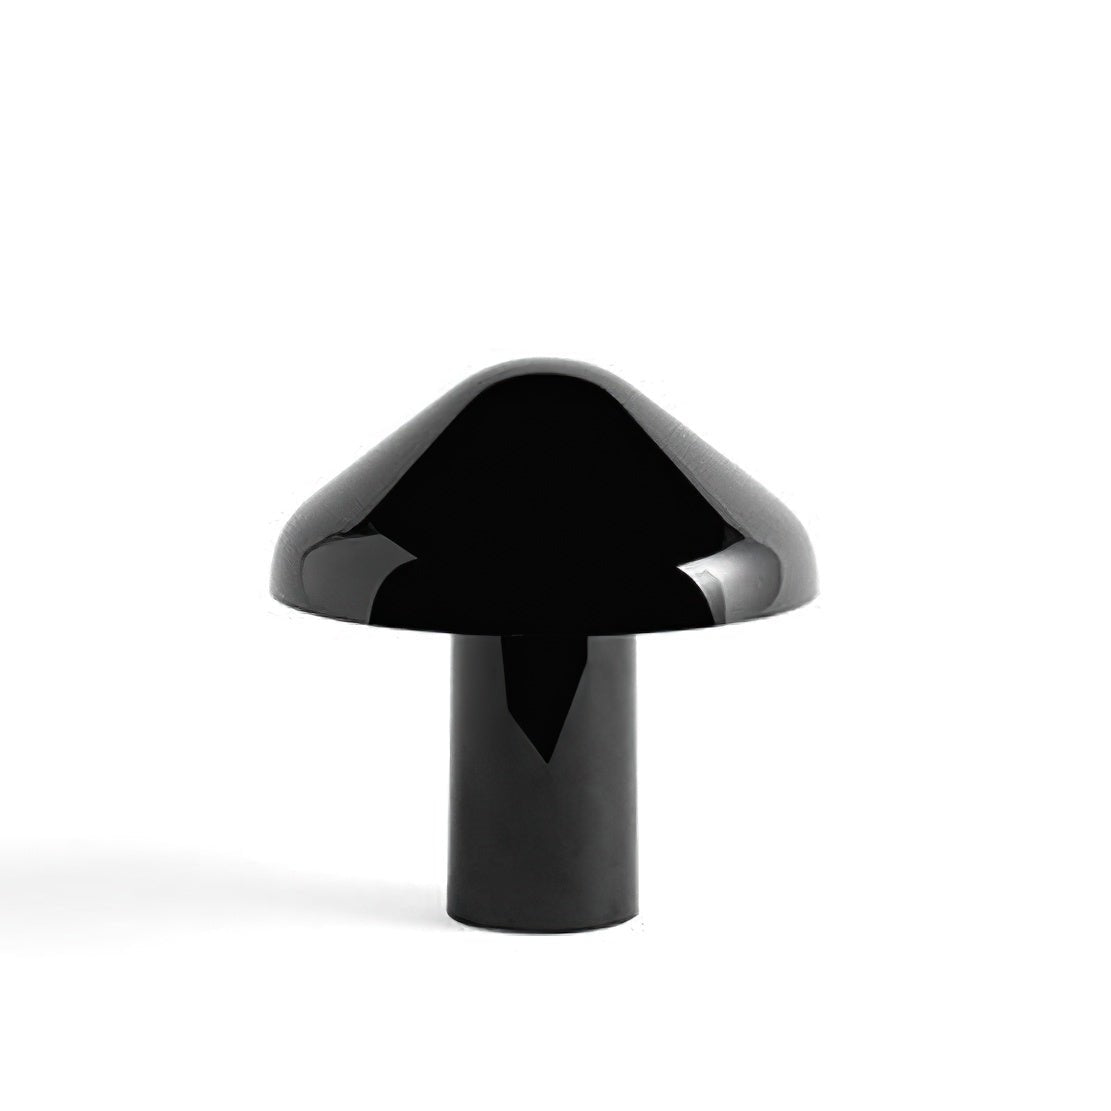 Black, metallic USB mushroom table lamp